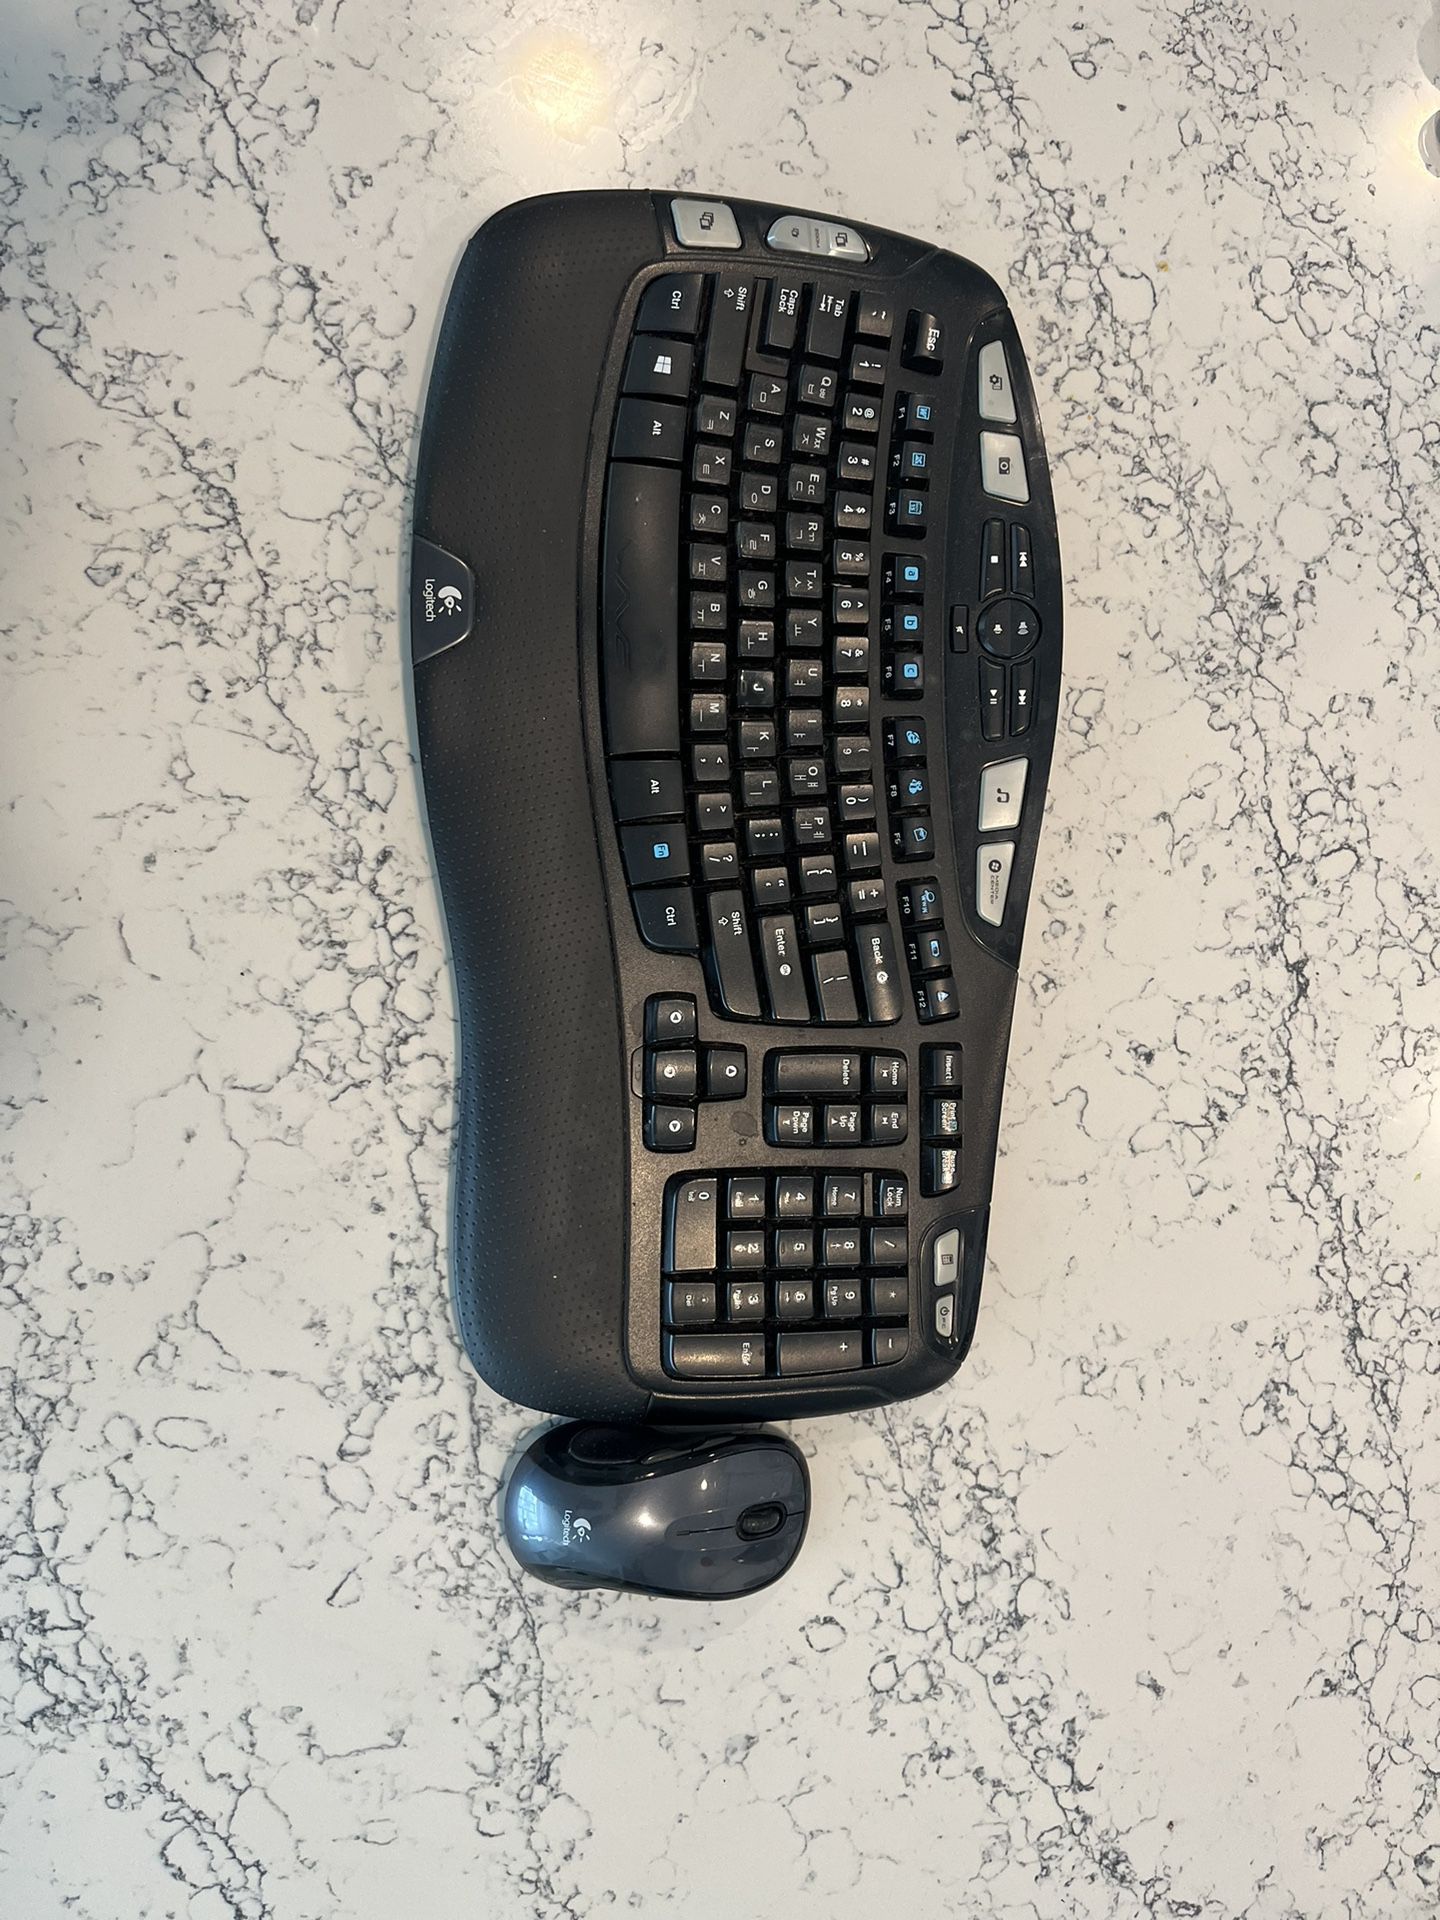 Logitech Wireless Keyboard And Mouse